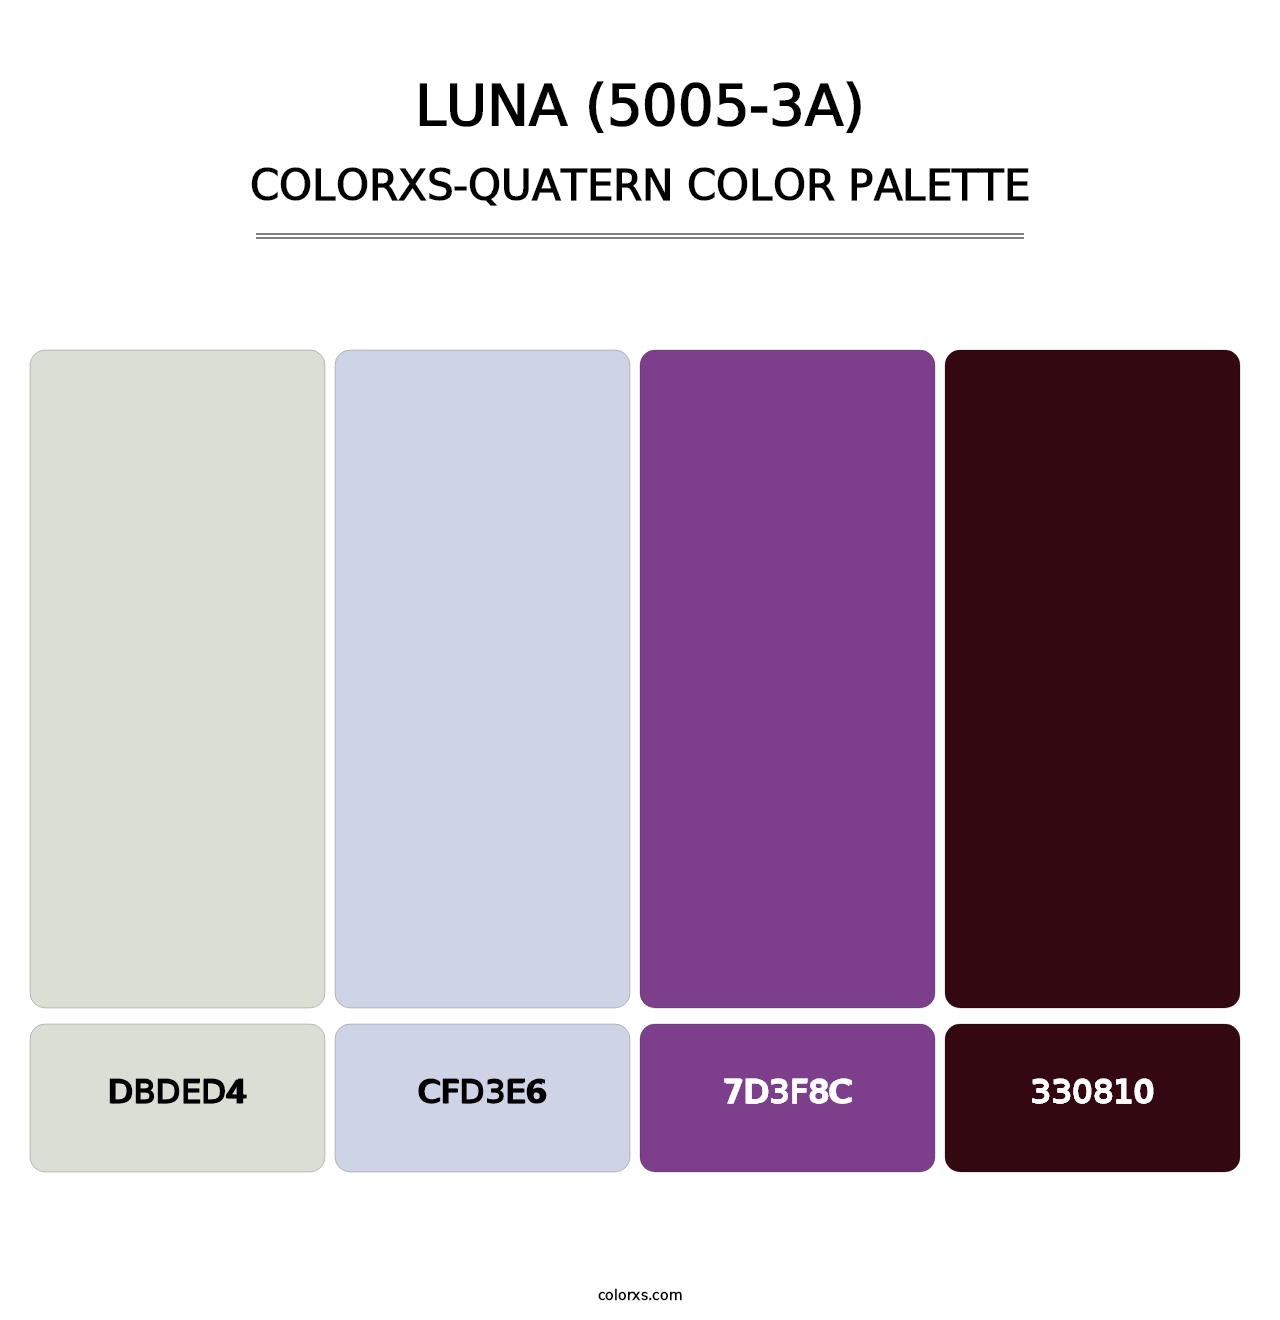 Luna (5005-3A) - Colorxs Quatern Palette